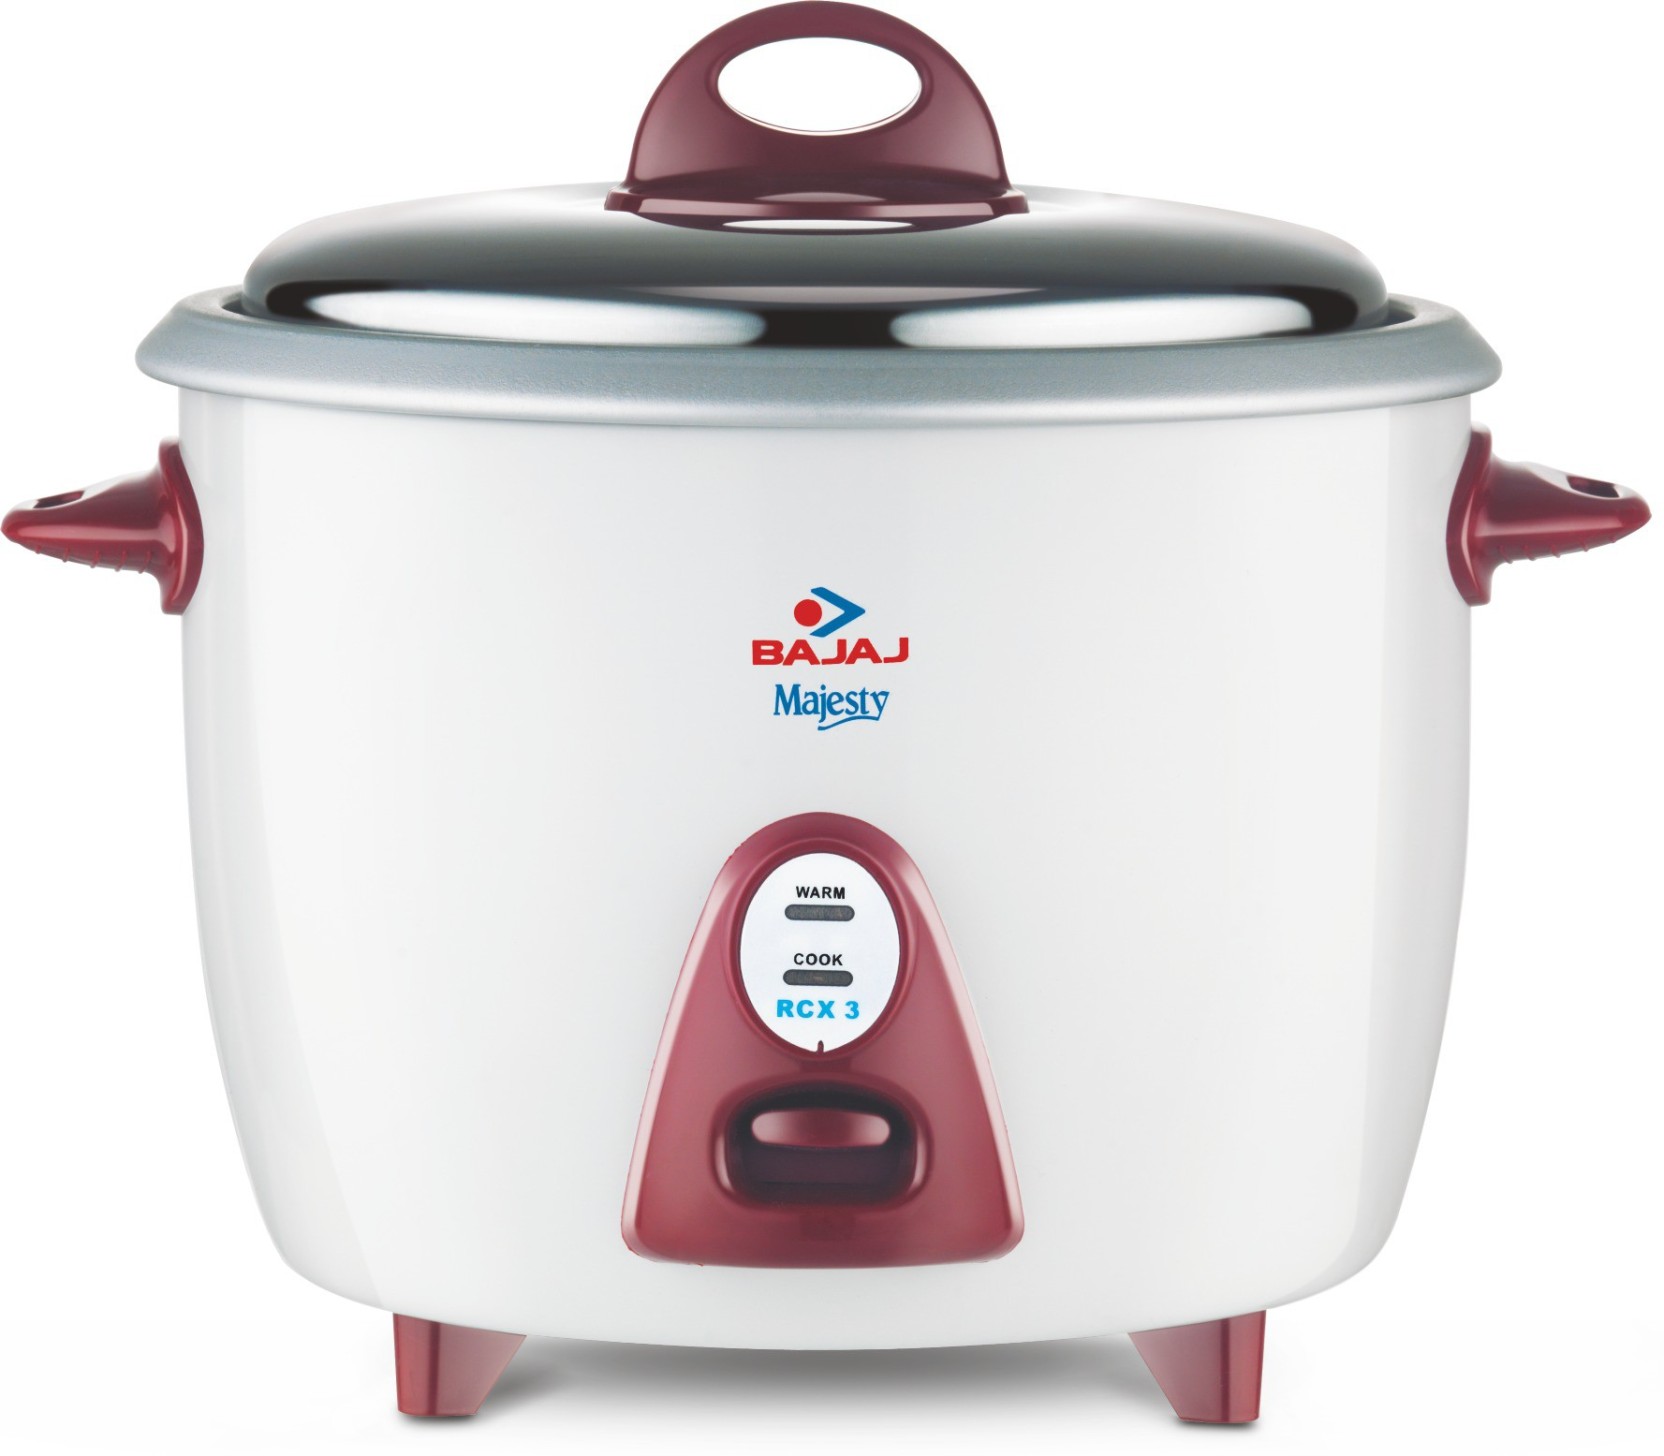 Bajaj Majesty New RCX 3 Electric Rice Cooker Price in India - Buy Bajaj ...